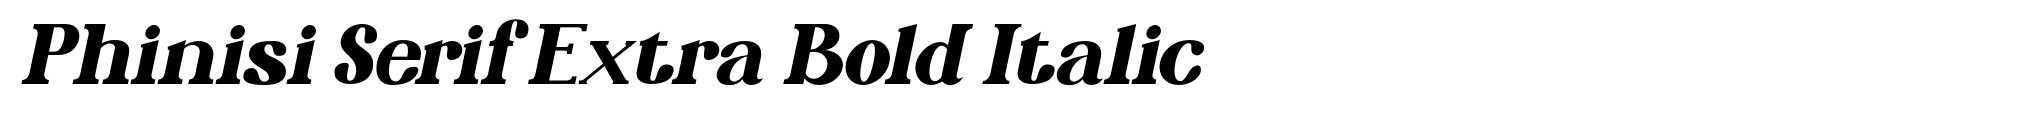 Phinisi Serif Extra Bold Italic image